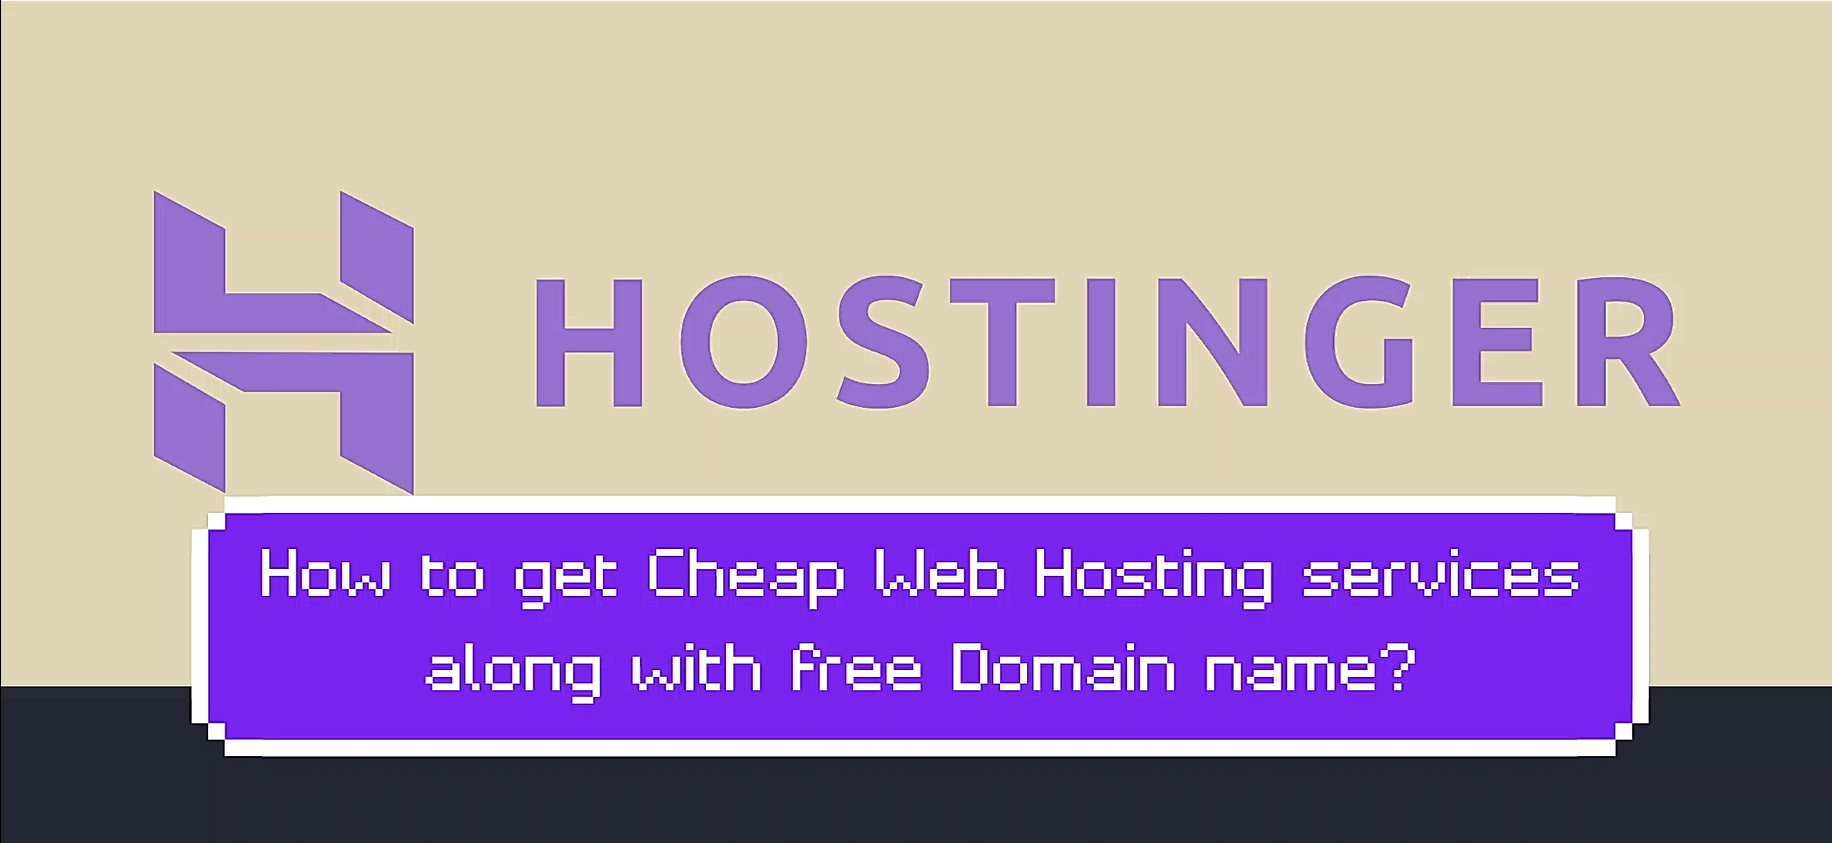 Cheap Web Hosting, Free Domain, Hostinger, Best Web Hosting